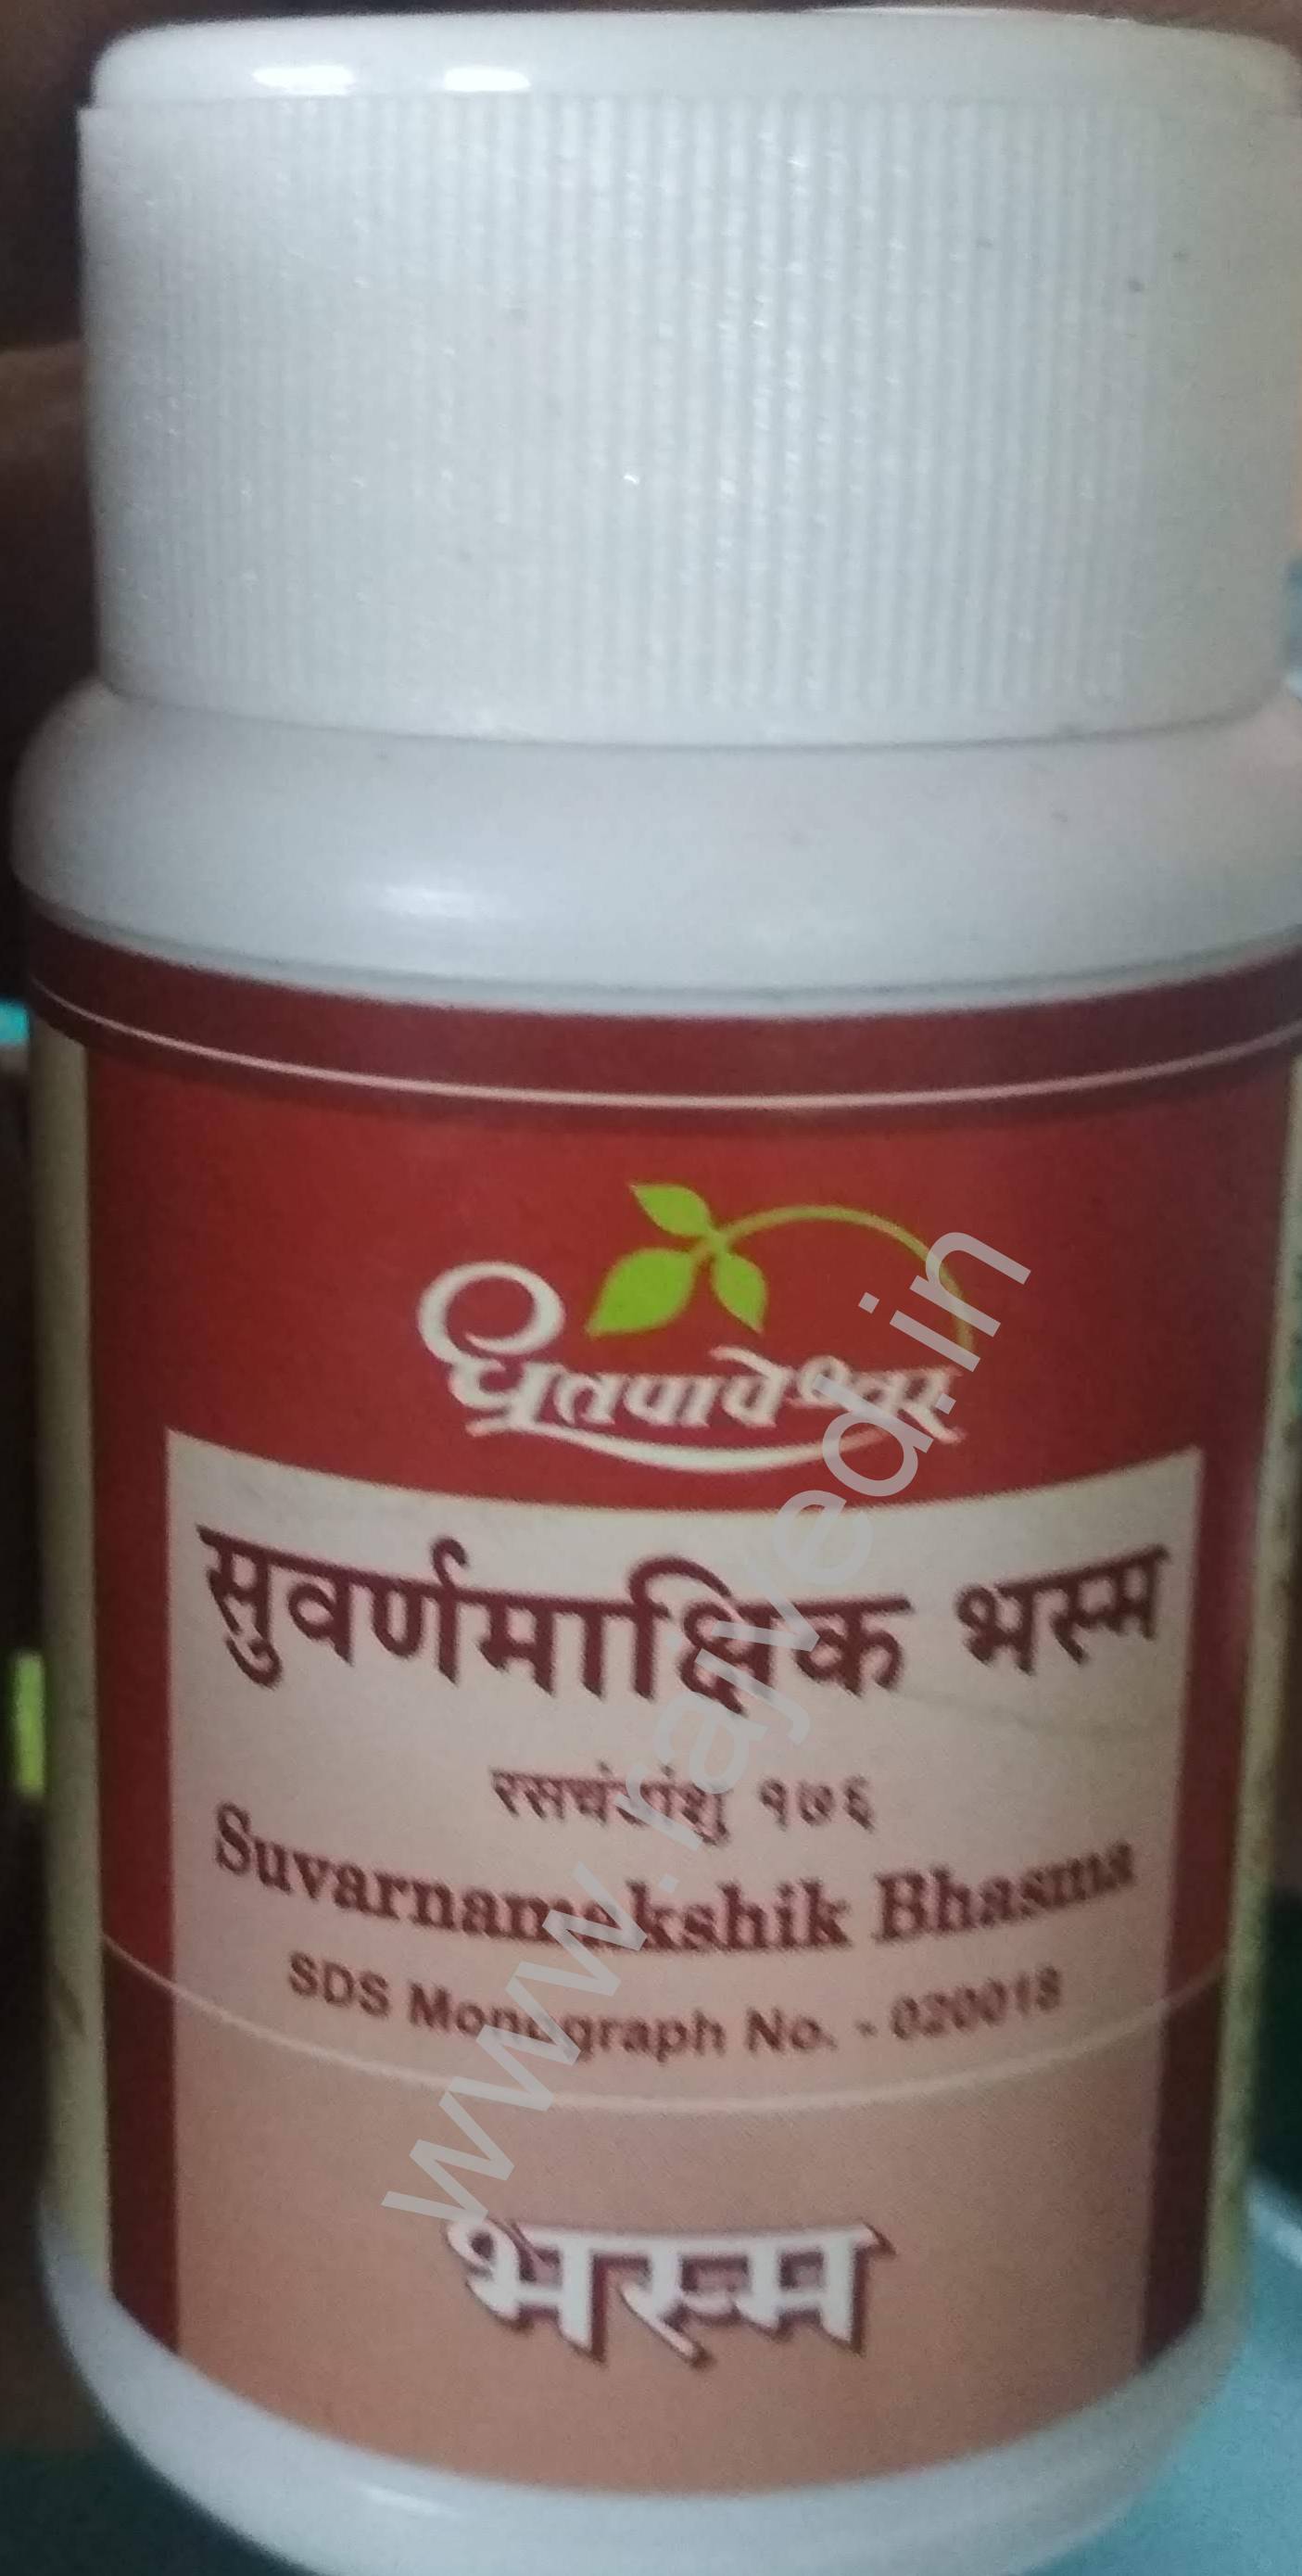 suvarnamakshik bhasma 5 gm upto 20% off shree dhootpapeshwar panvel